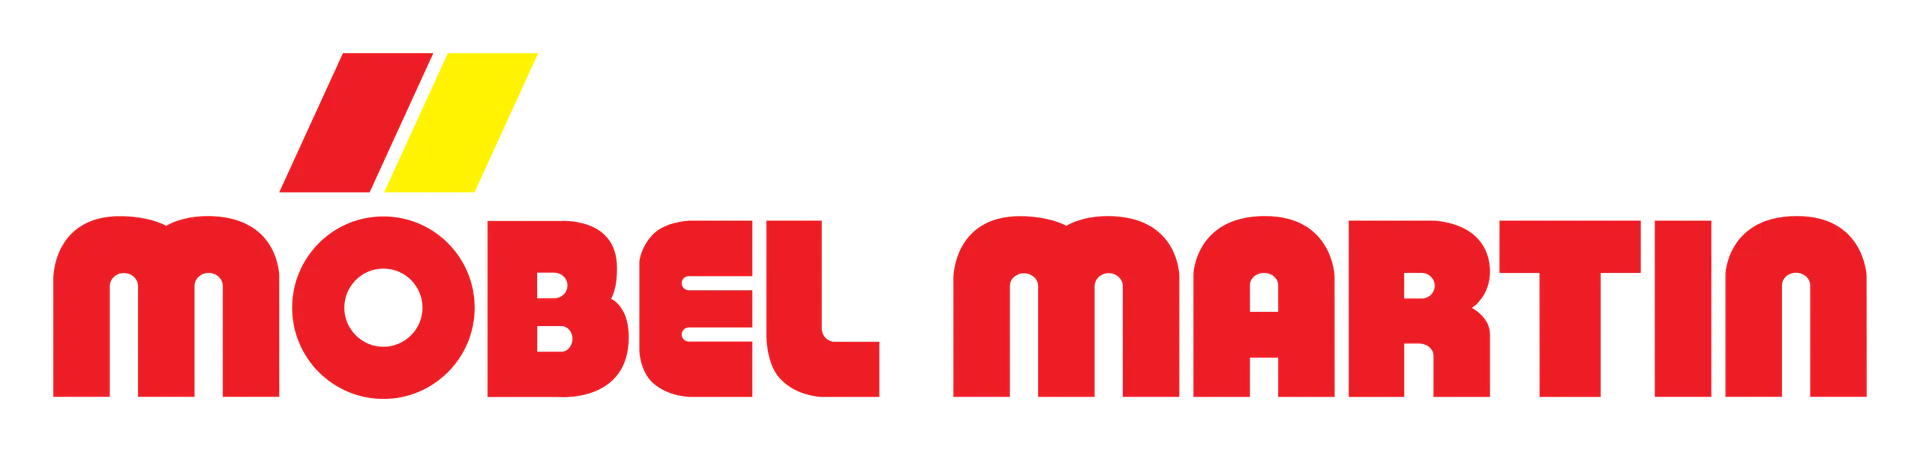 MÖBEL MARTIN logo